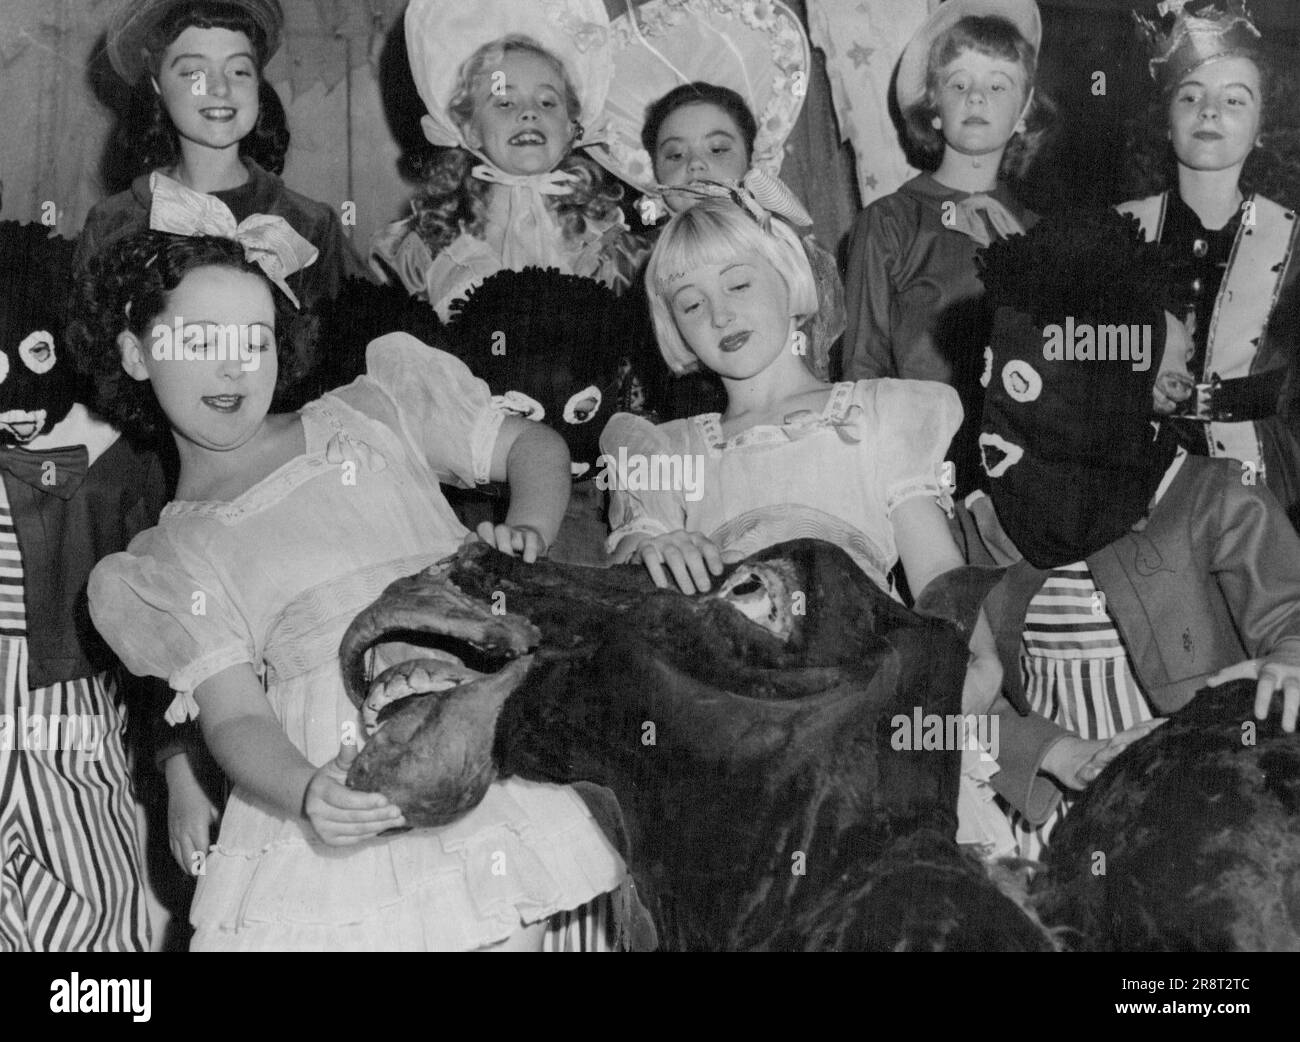 Les enfants du Panto de Noël dans la troupe du pantomime Tivoli, 'autre OIE,' font un fus de Pansy le cheval. Donna Whittaker (10 ans) lui donne une chance. 23 décembre 1947. Banque D'Images